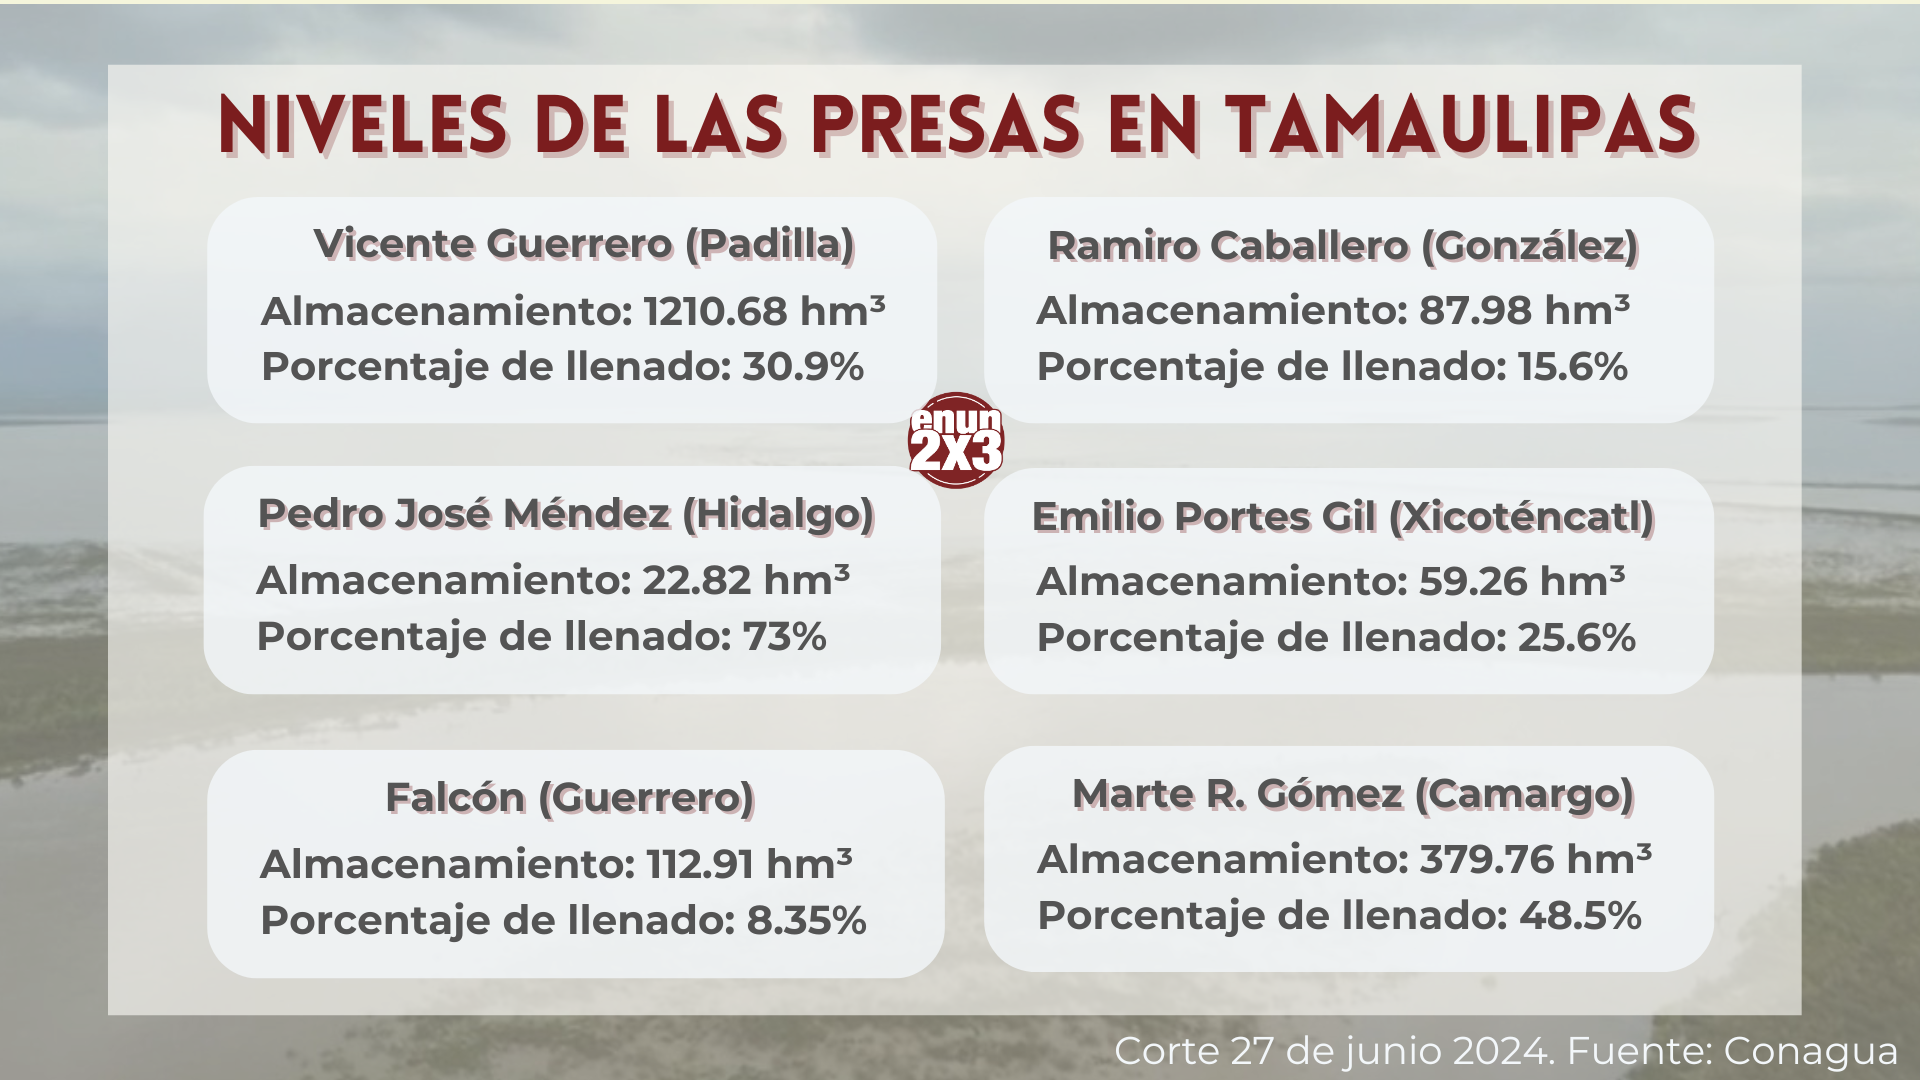 Niveles de las presas en Tamaulipas. Fuente: Conagua.